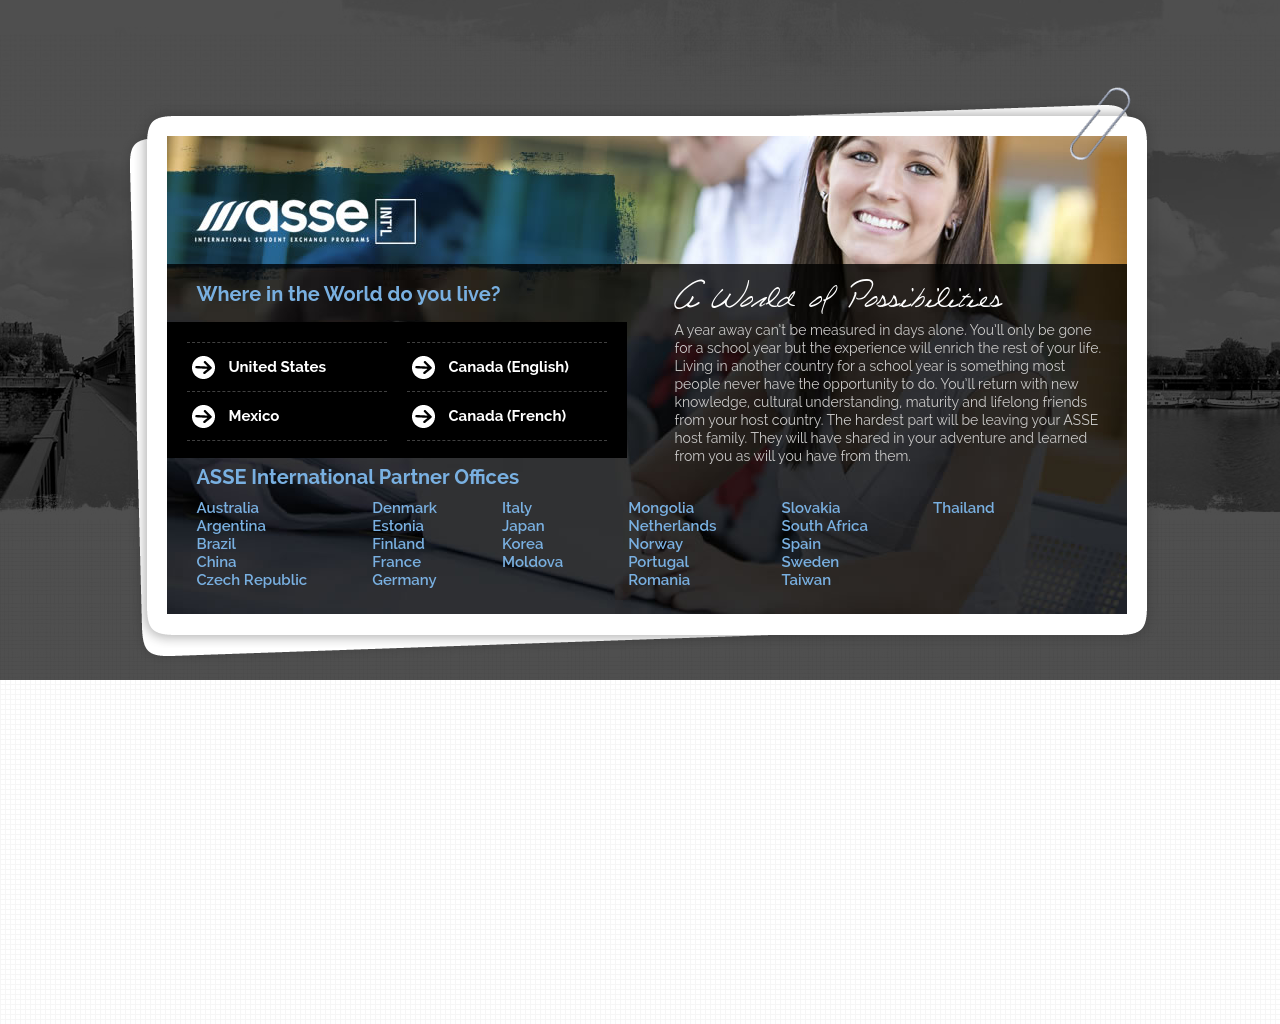 asse.com